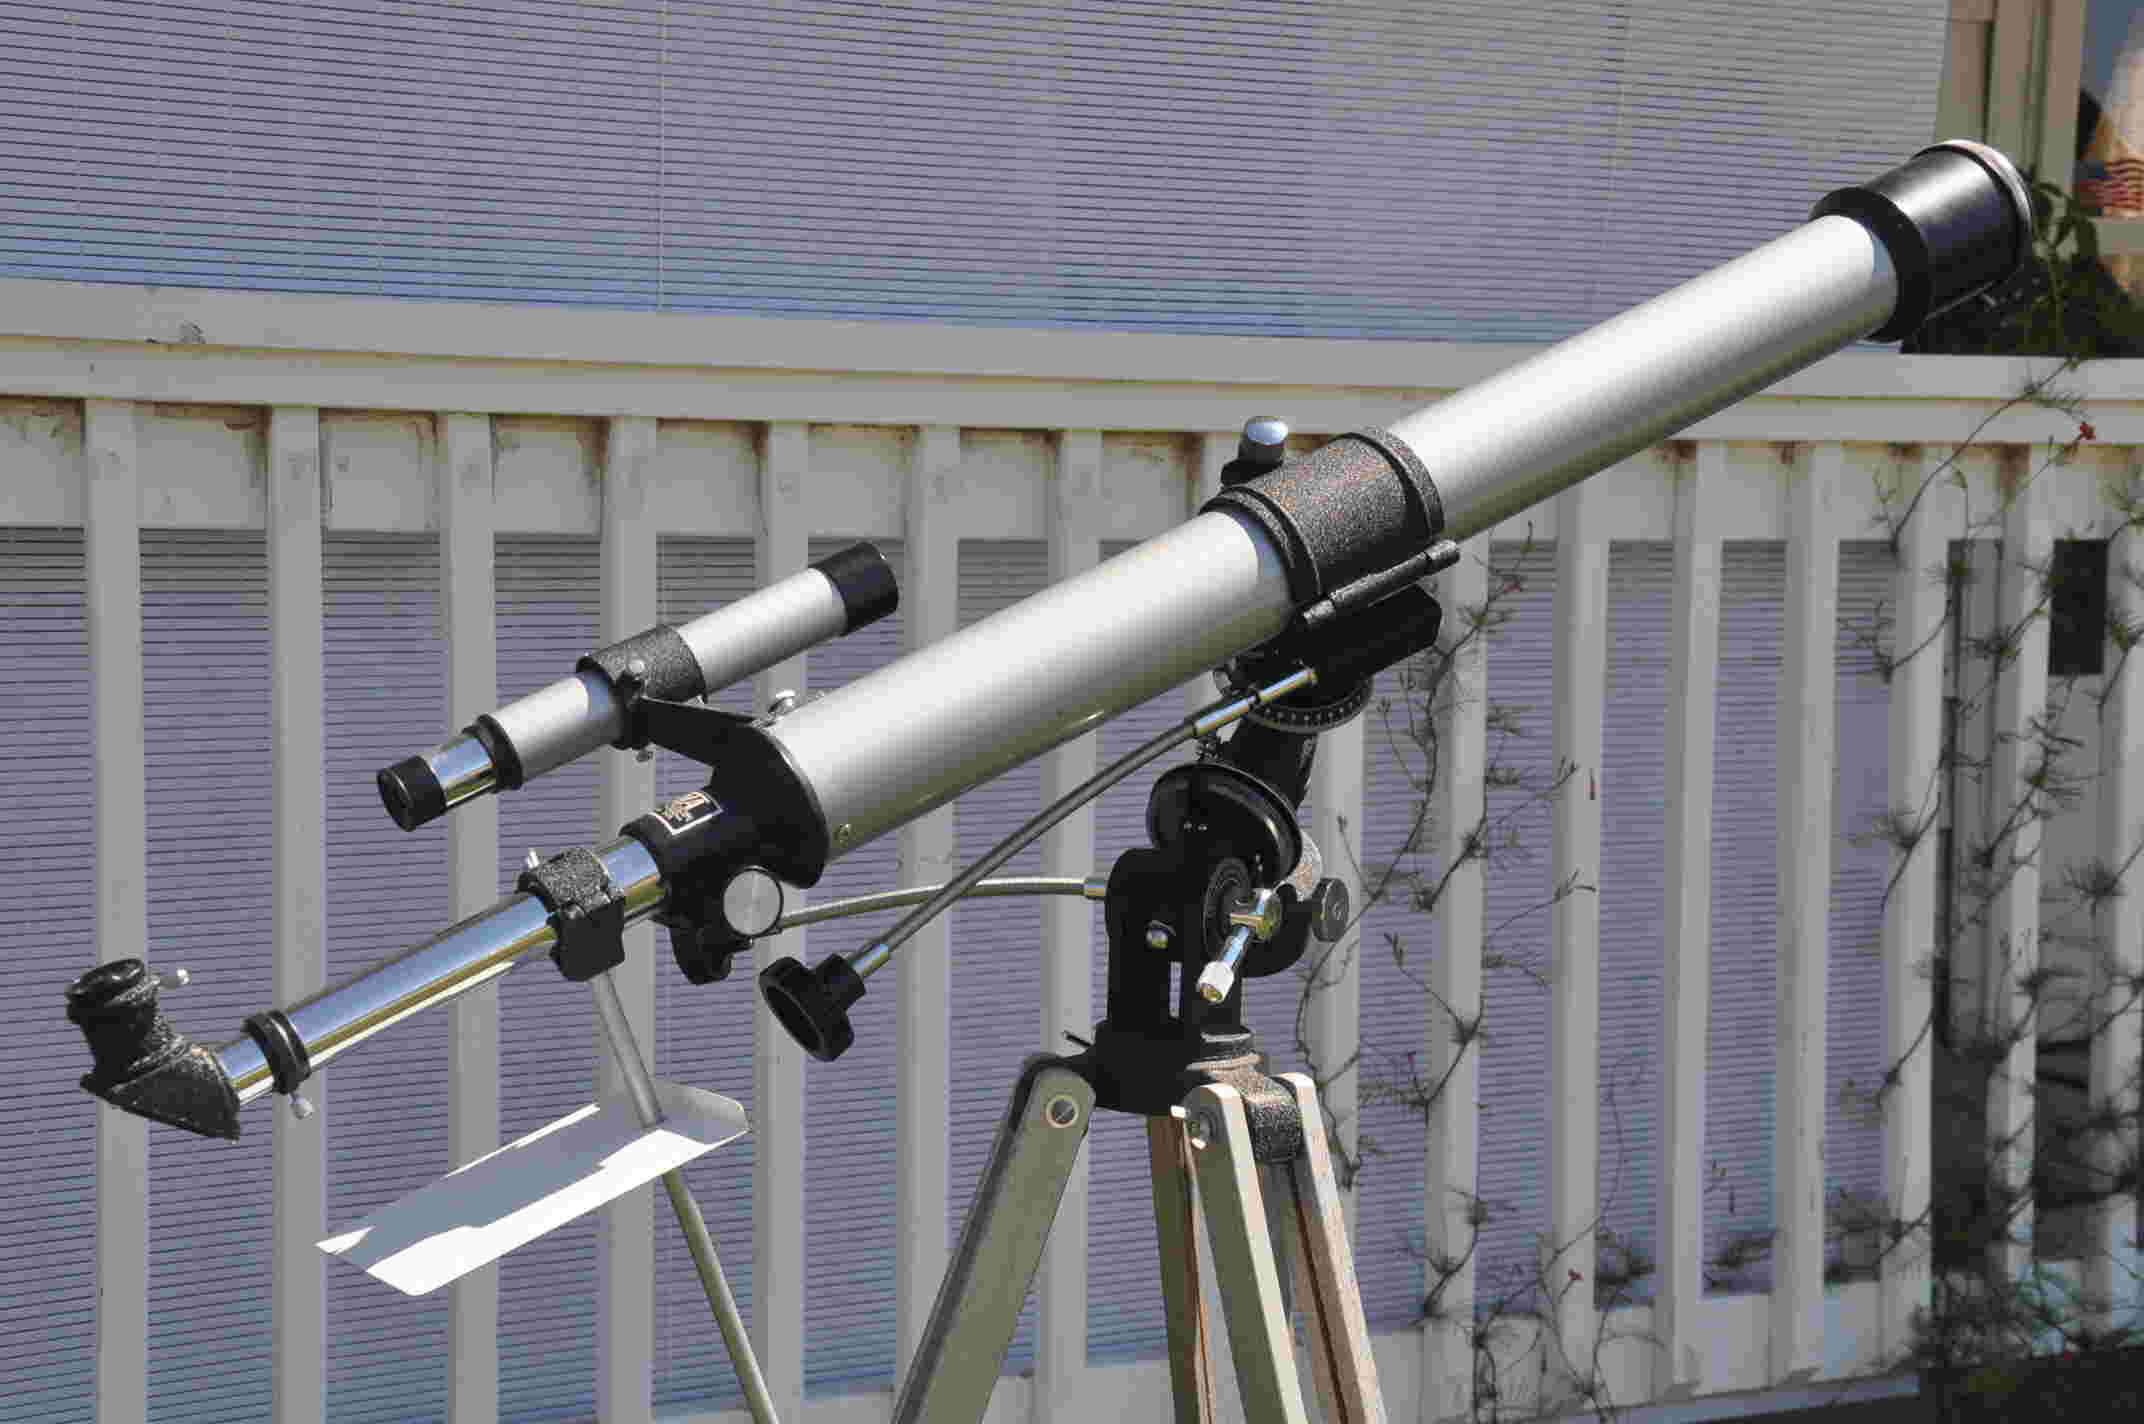 Quel télescope choisir pour un enfant ? - Optique Unterlinden